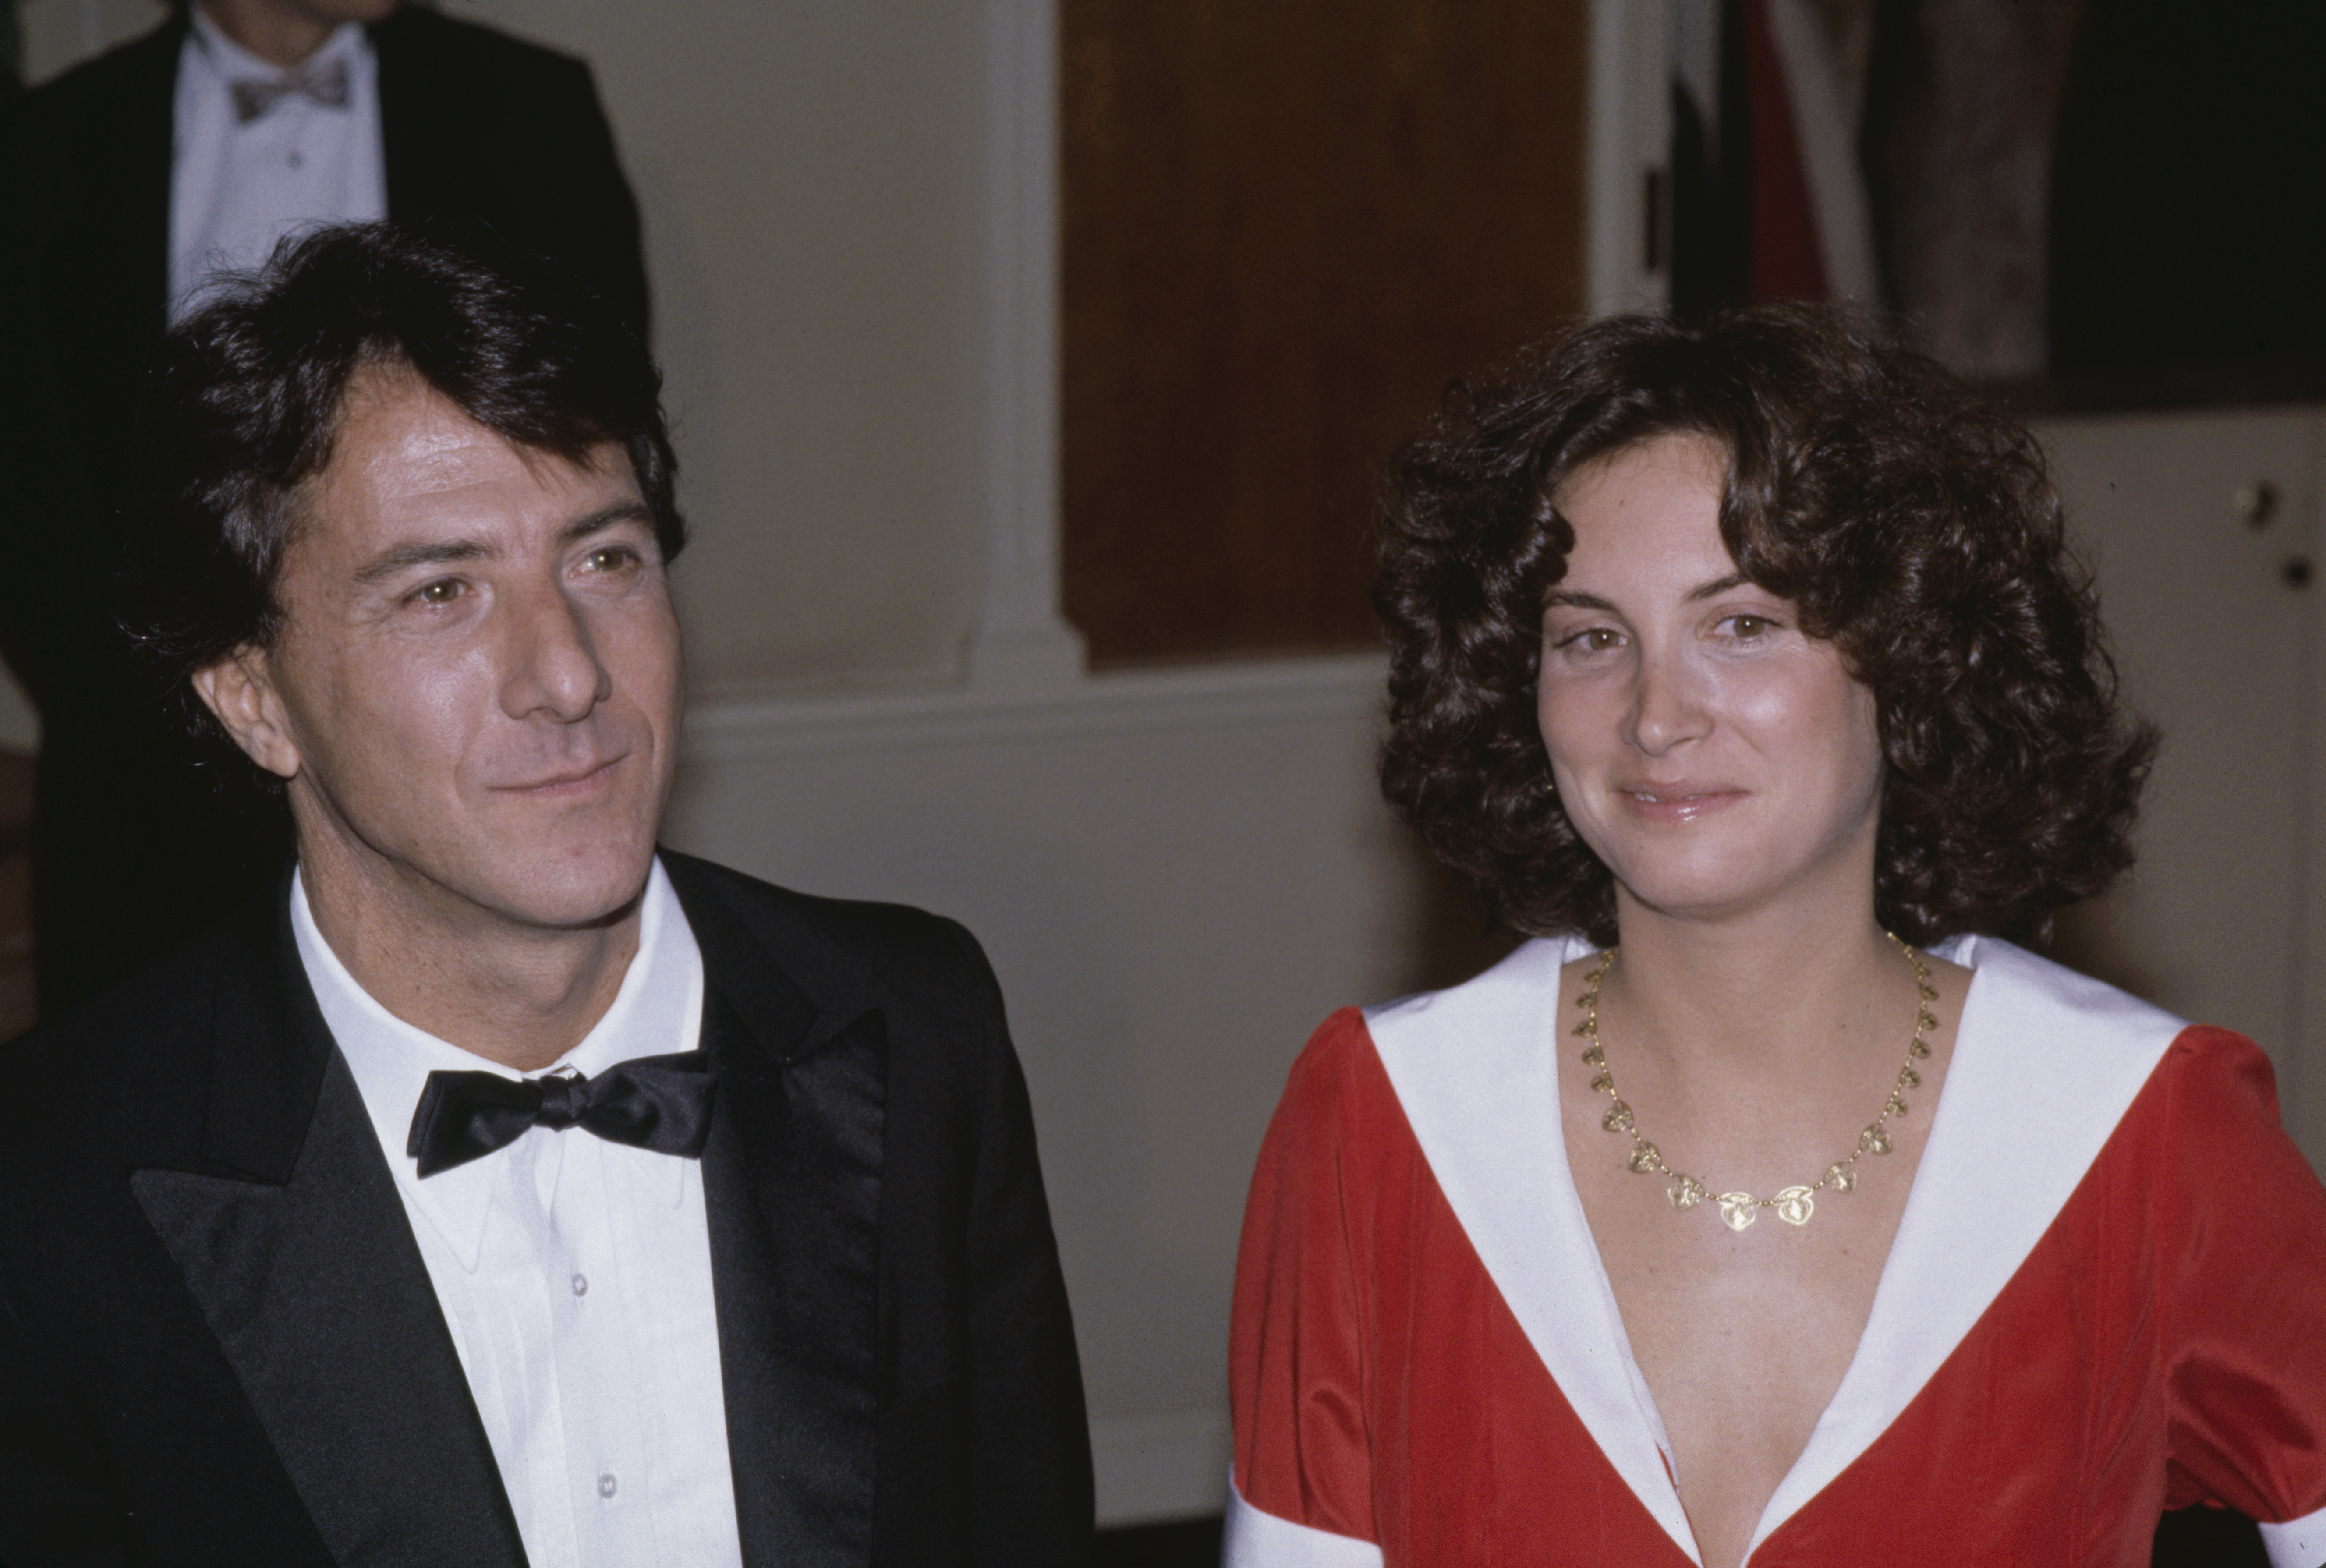 Der Schauspieler und die Frau bei den 40th Annual Golden Globe Awards in Beverly Hills, Kalifornien am 29. Januar 1983. | Quelle: Getty Images